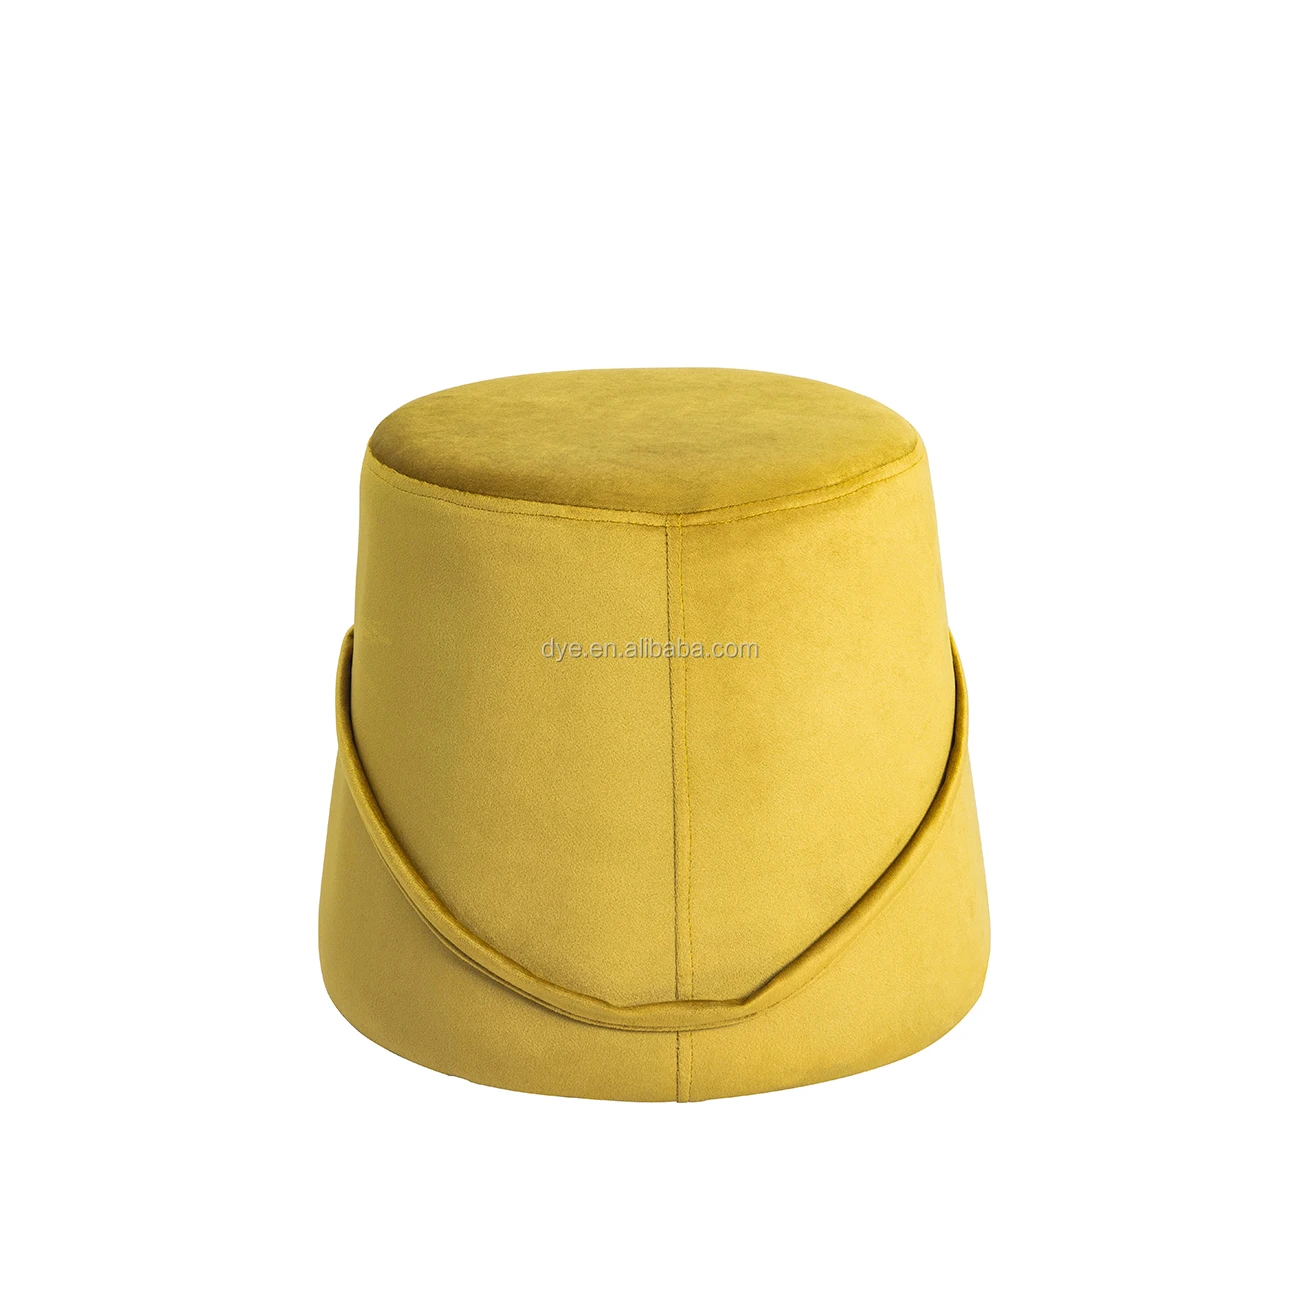 Upholstered Seat Big Round Foam Velvet Ottoman Stool